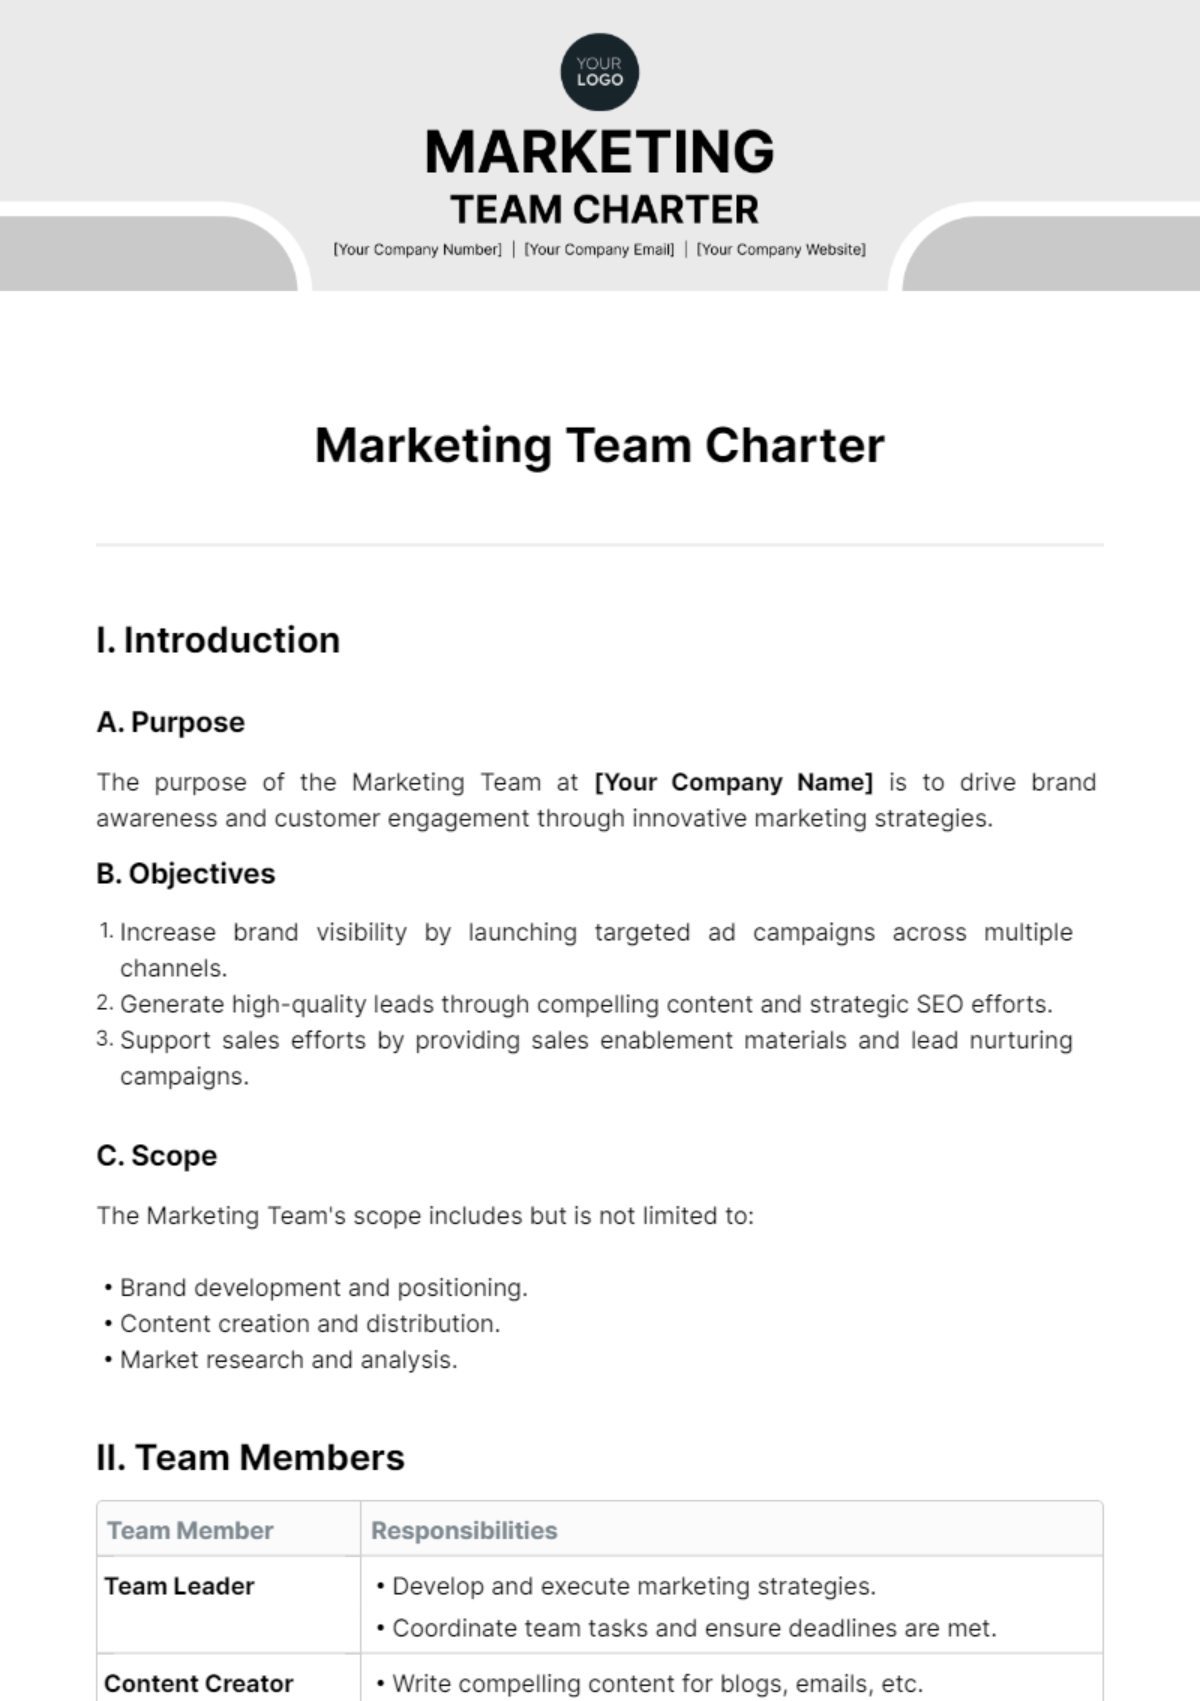 Marketing Team Charter Template